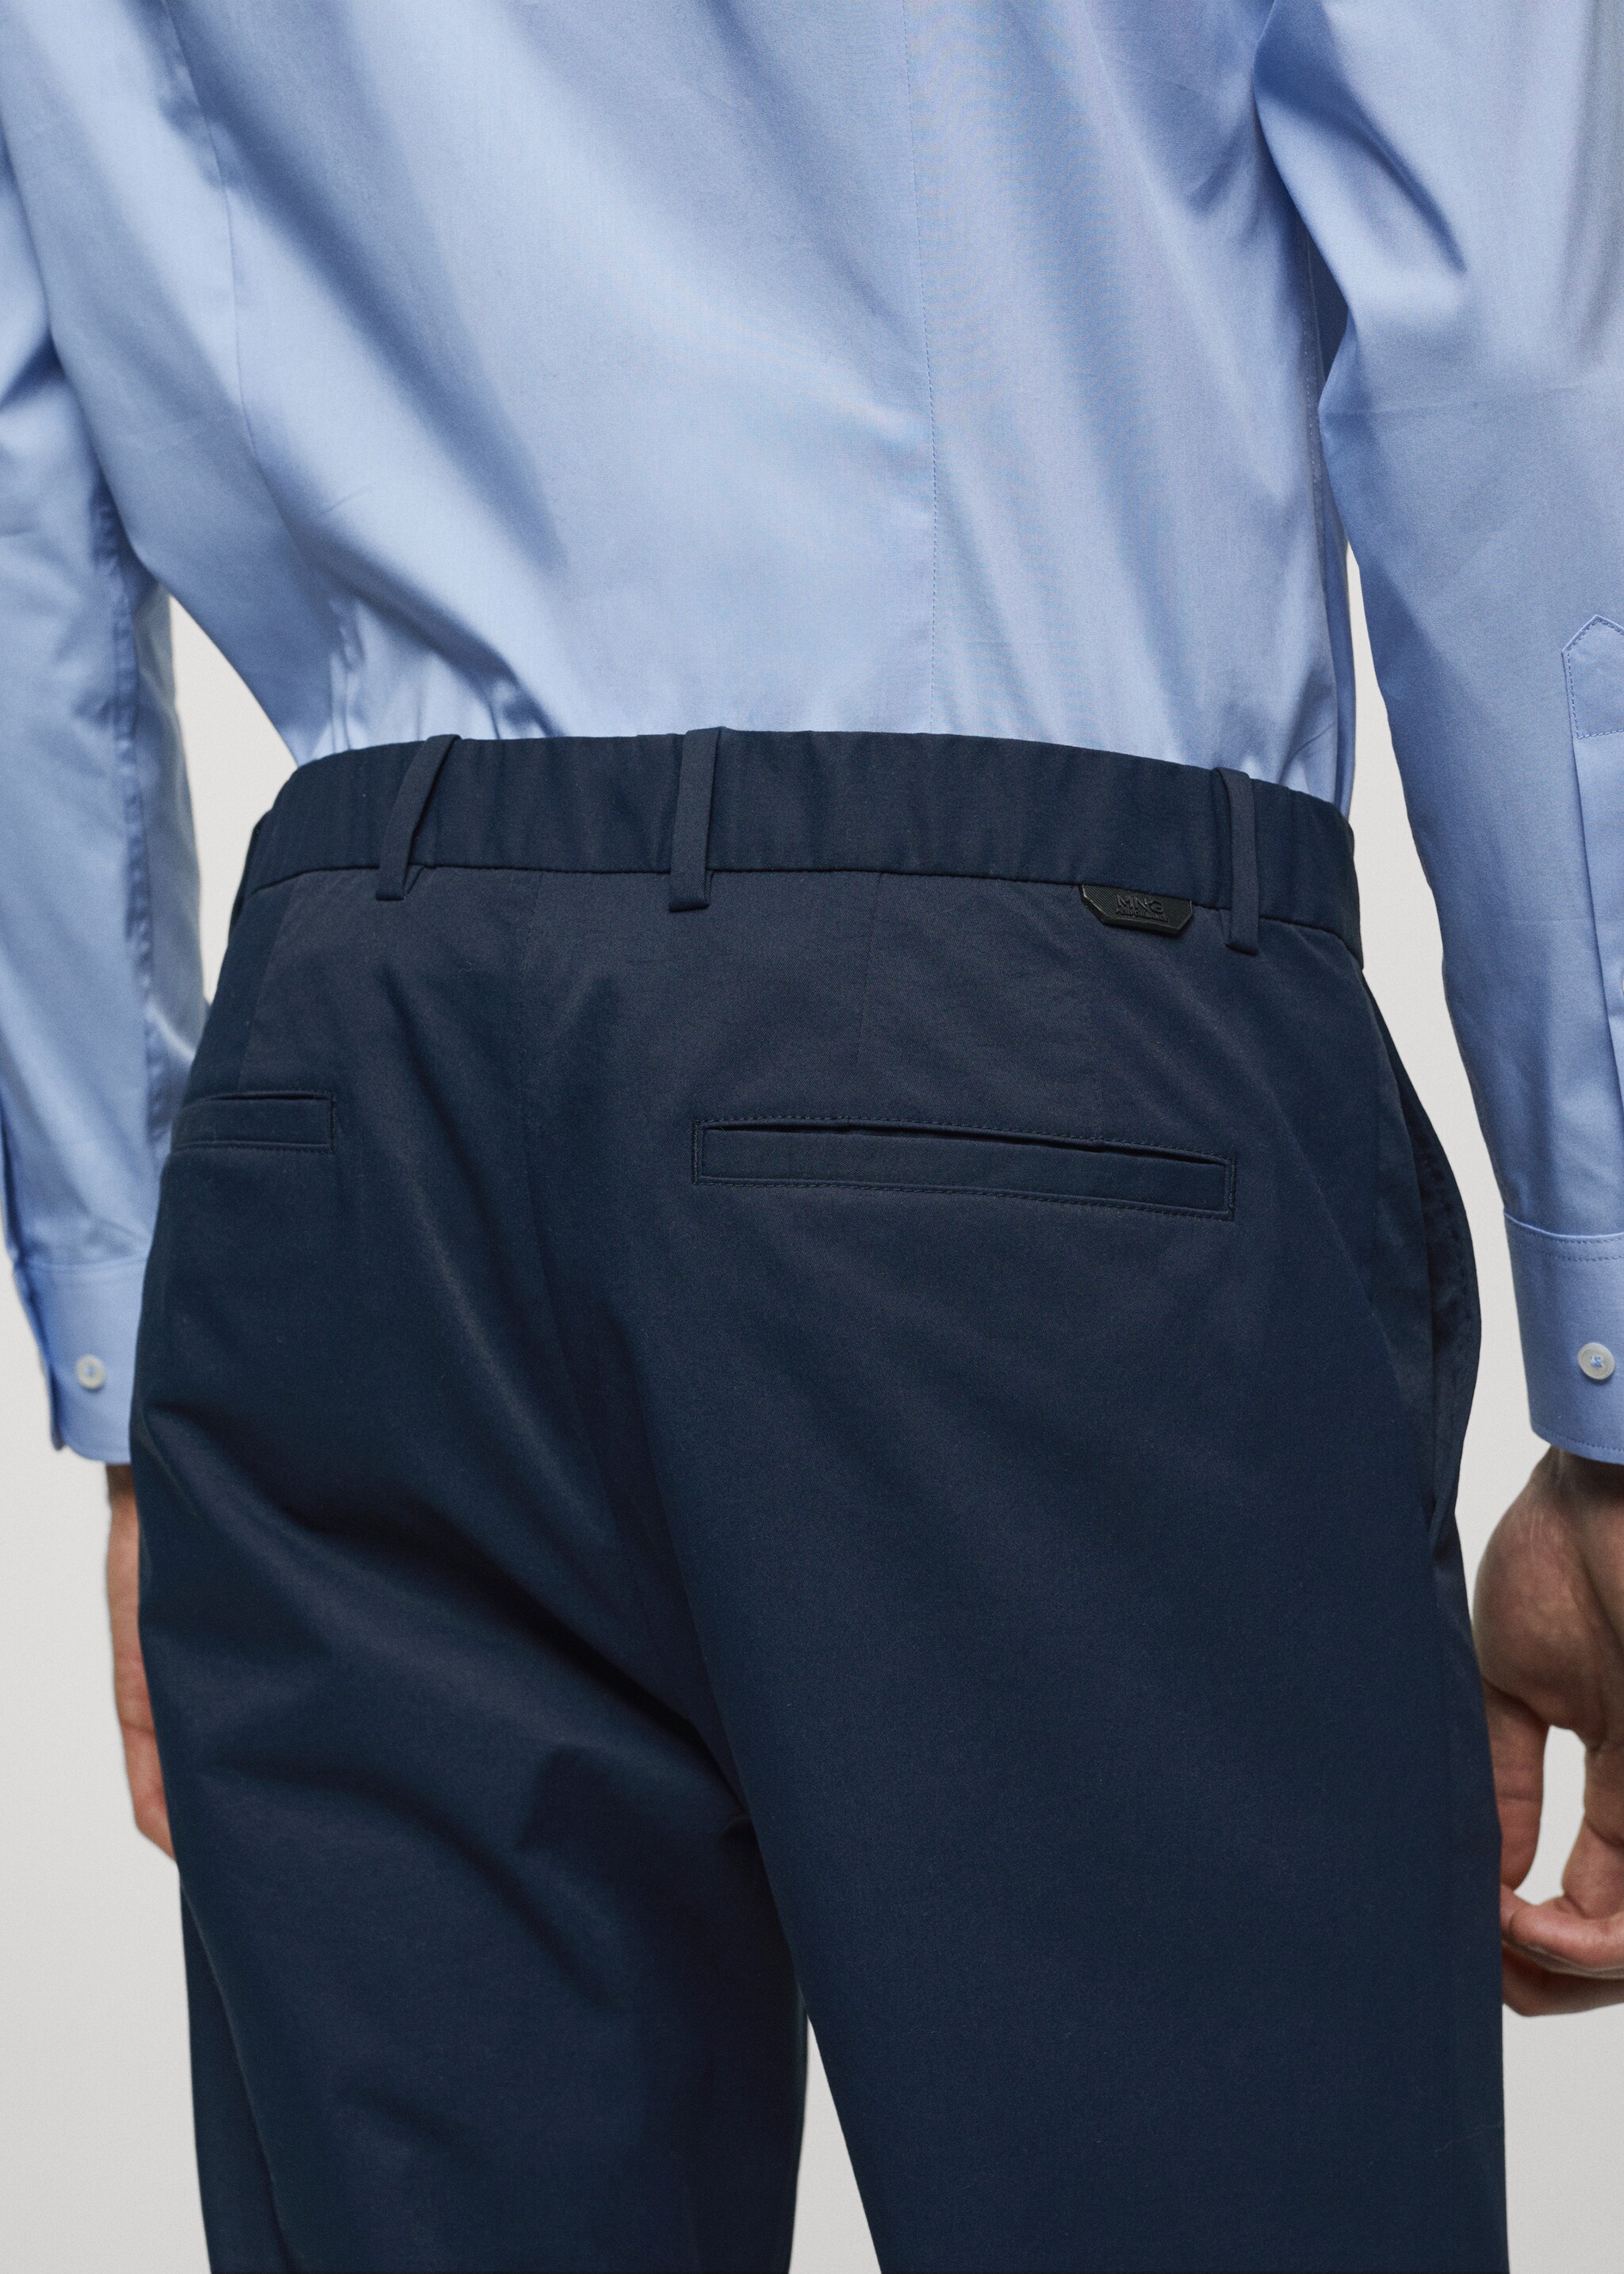 Pantalón slim fit tejido técnico - Detalle del artículo 4